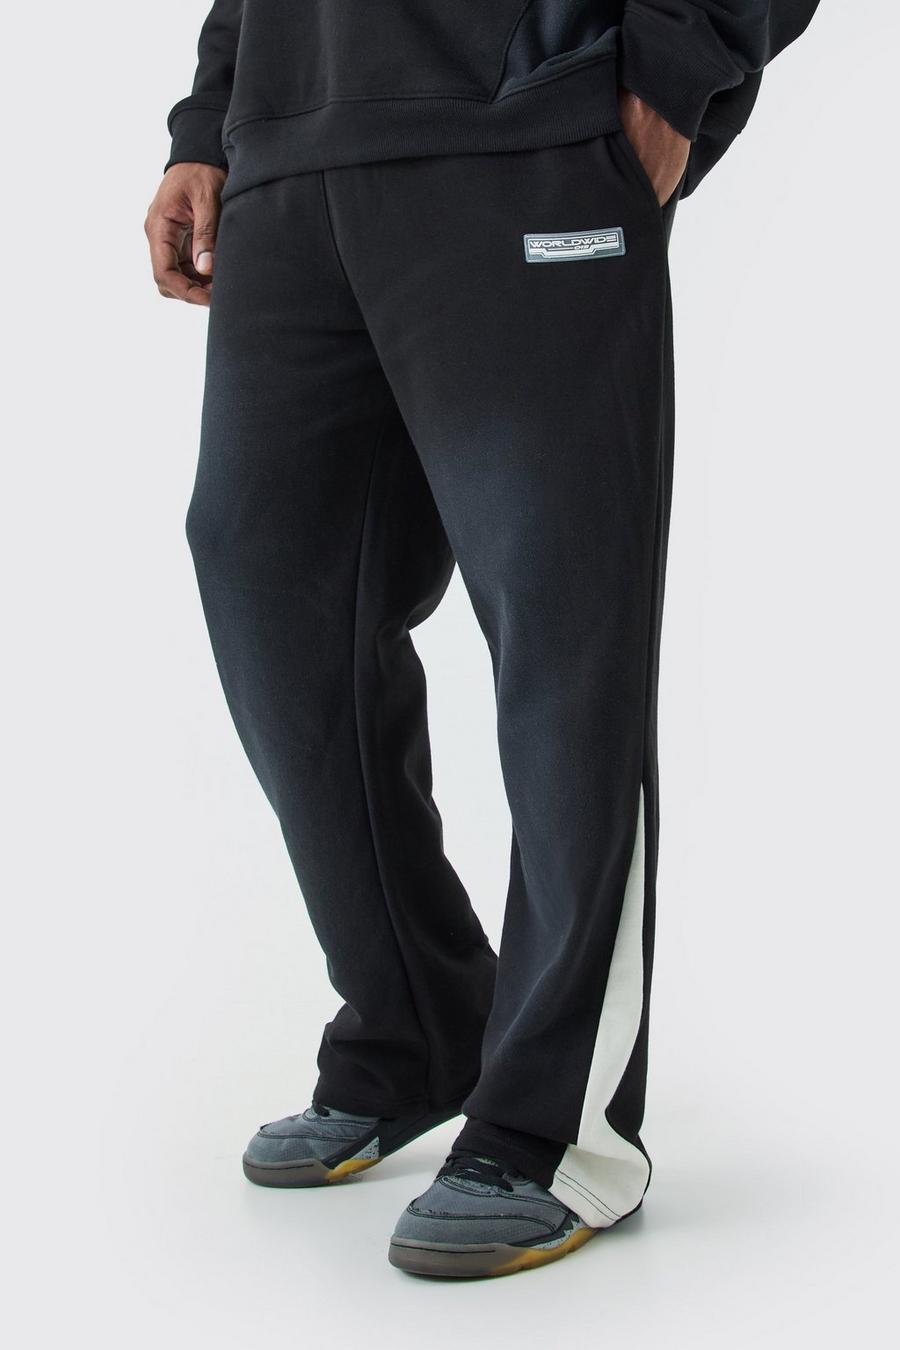 Pantalón deportivo Plus Regular de tela rizo desteñida con refuerzos, Black